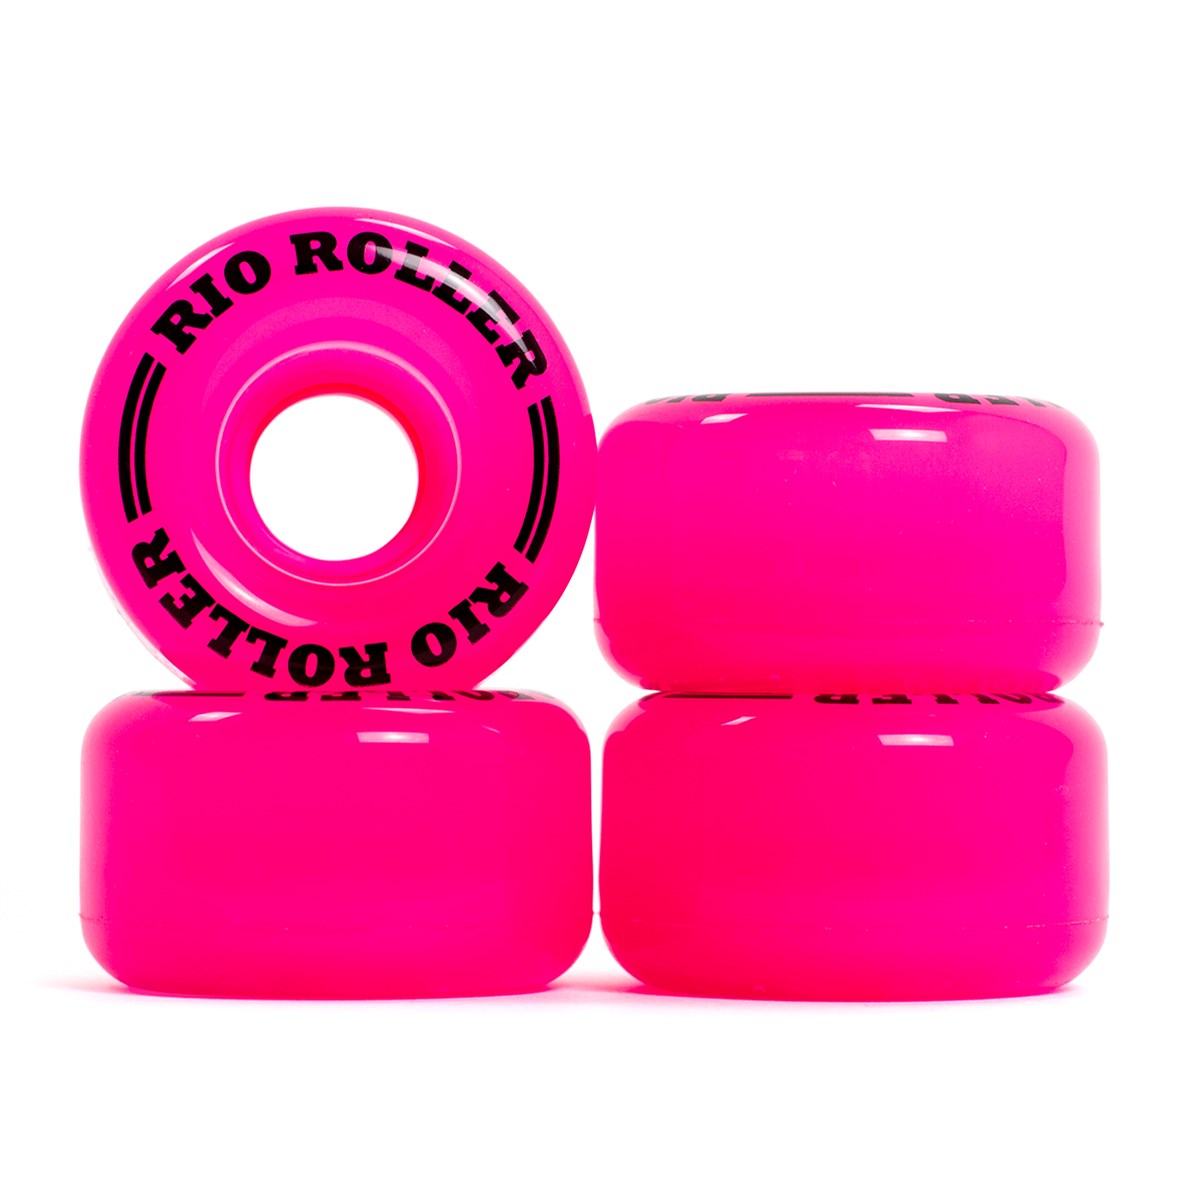 Ruedas para patines Rio Roller Coaster, color rosa, 62 mm, juego de 4